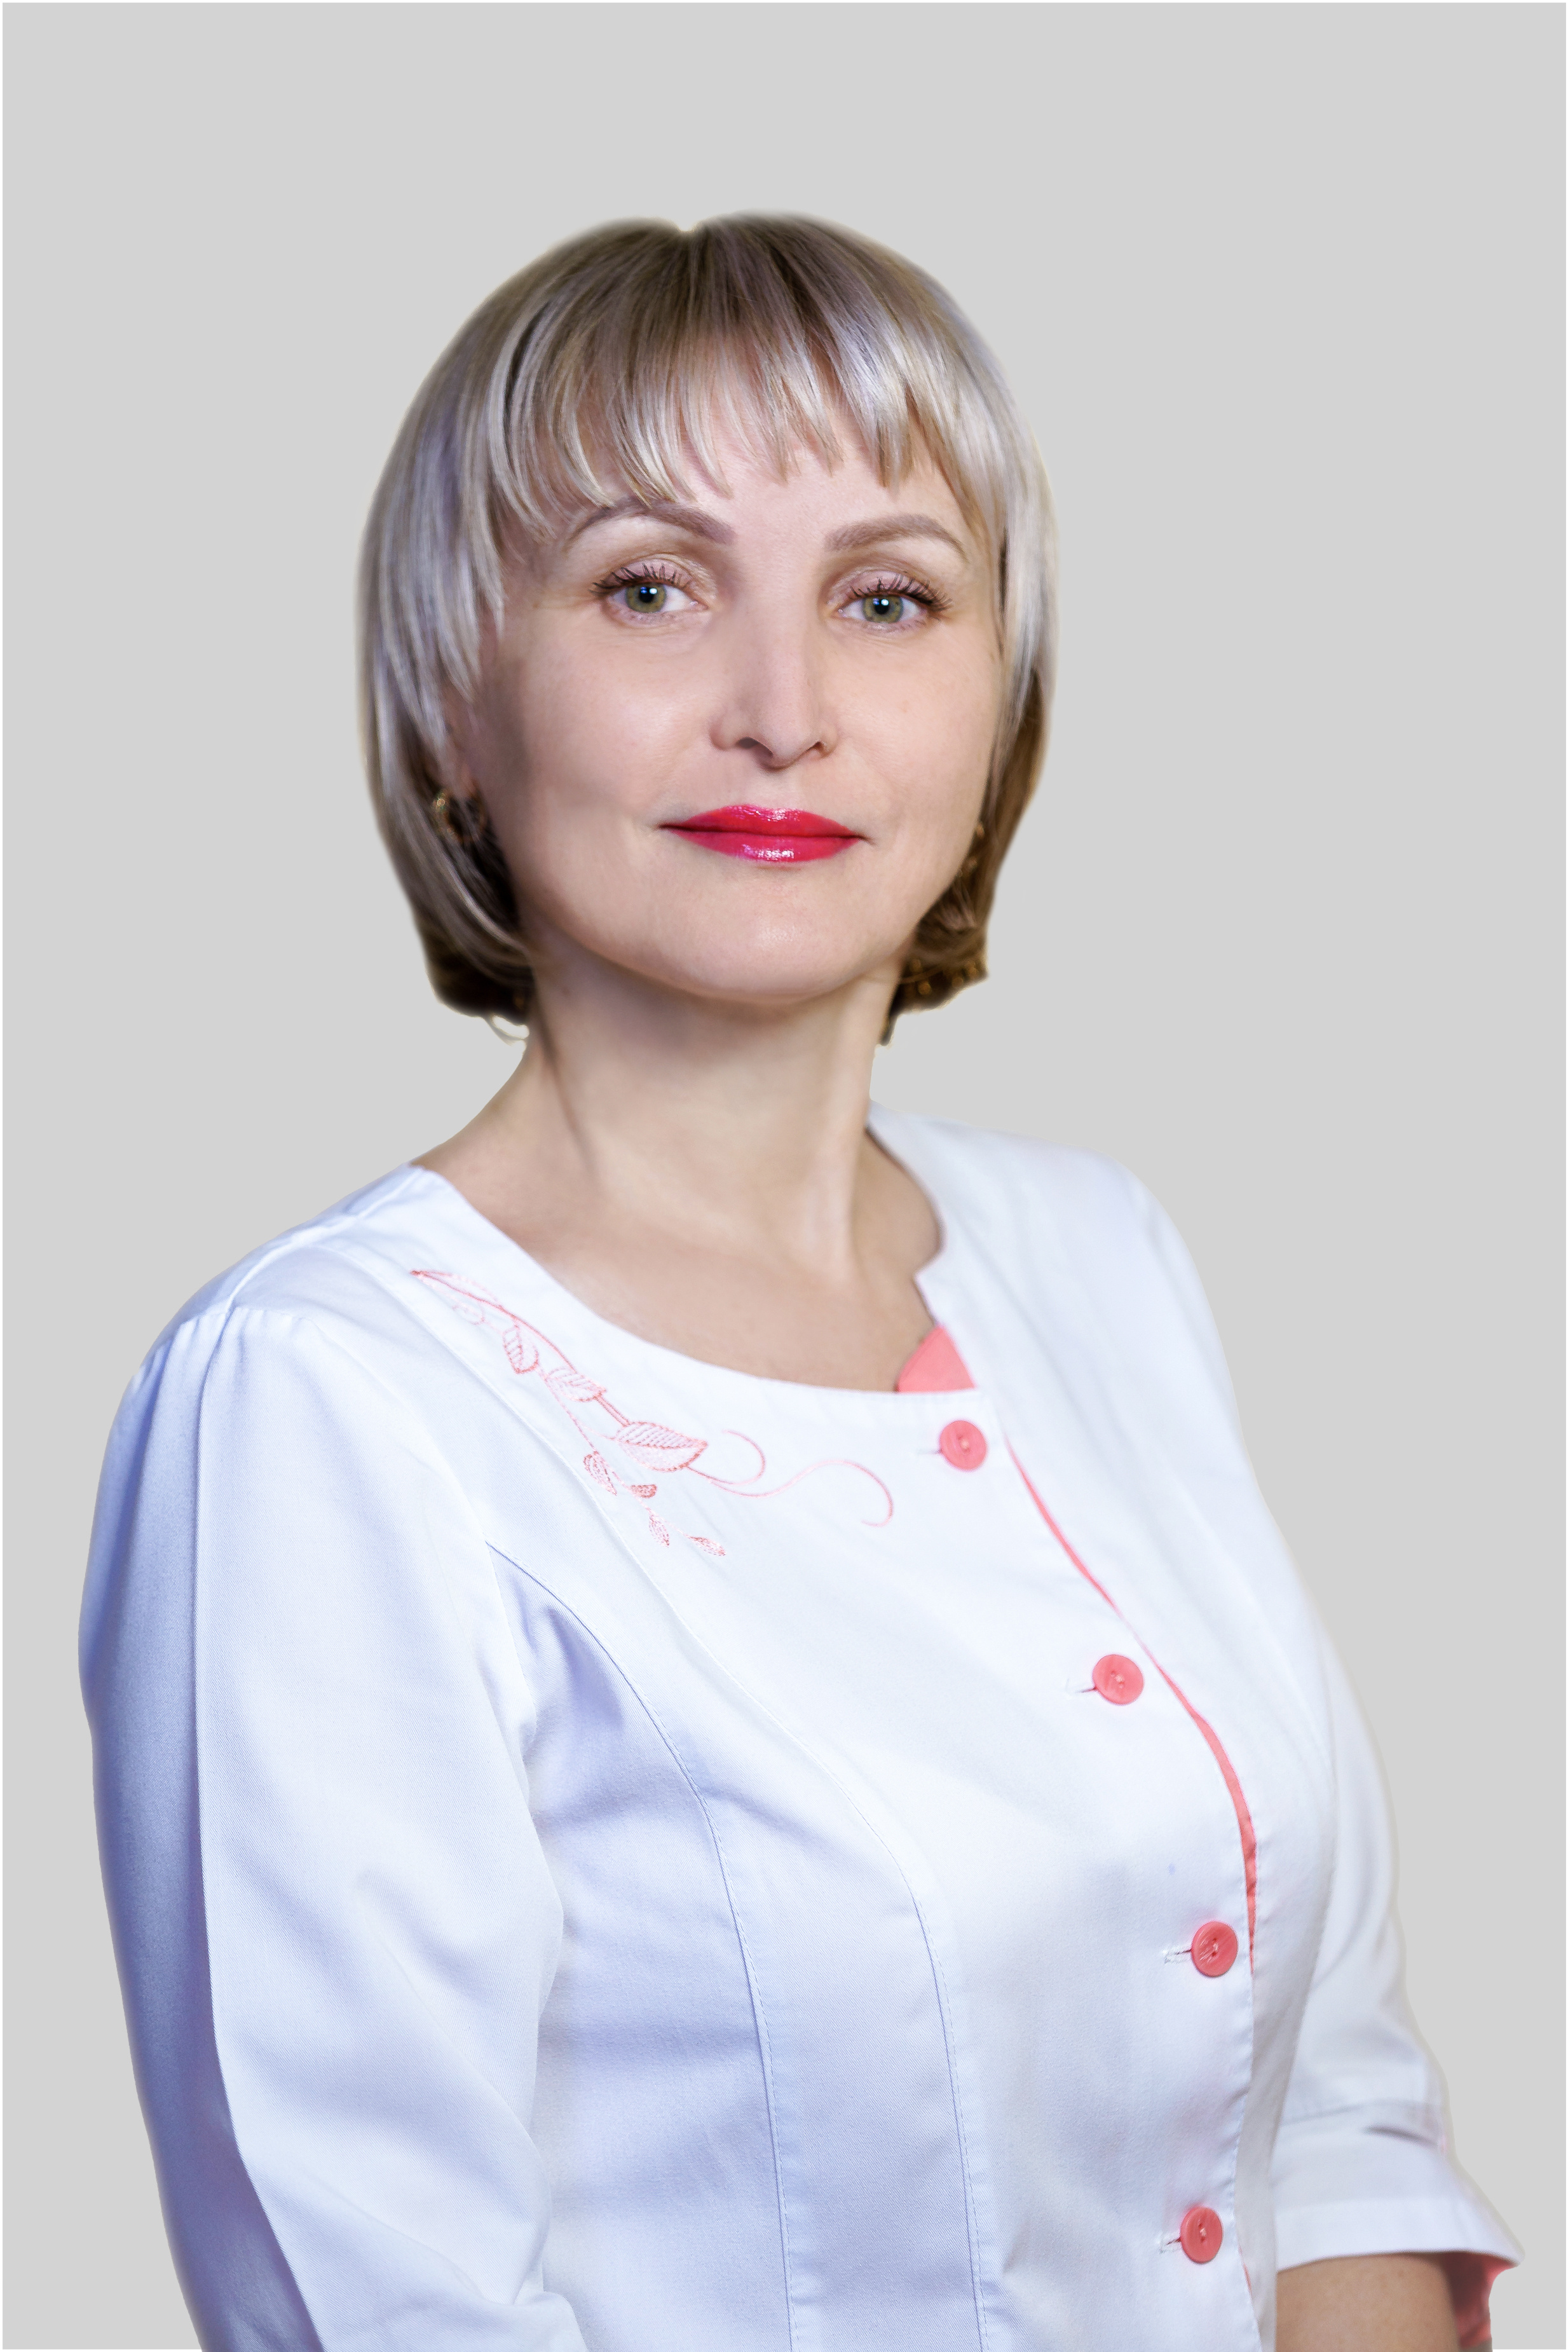 Бутова Татьяна Борисовна